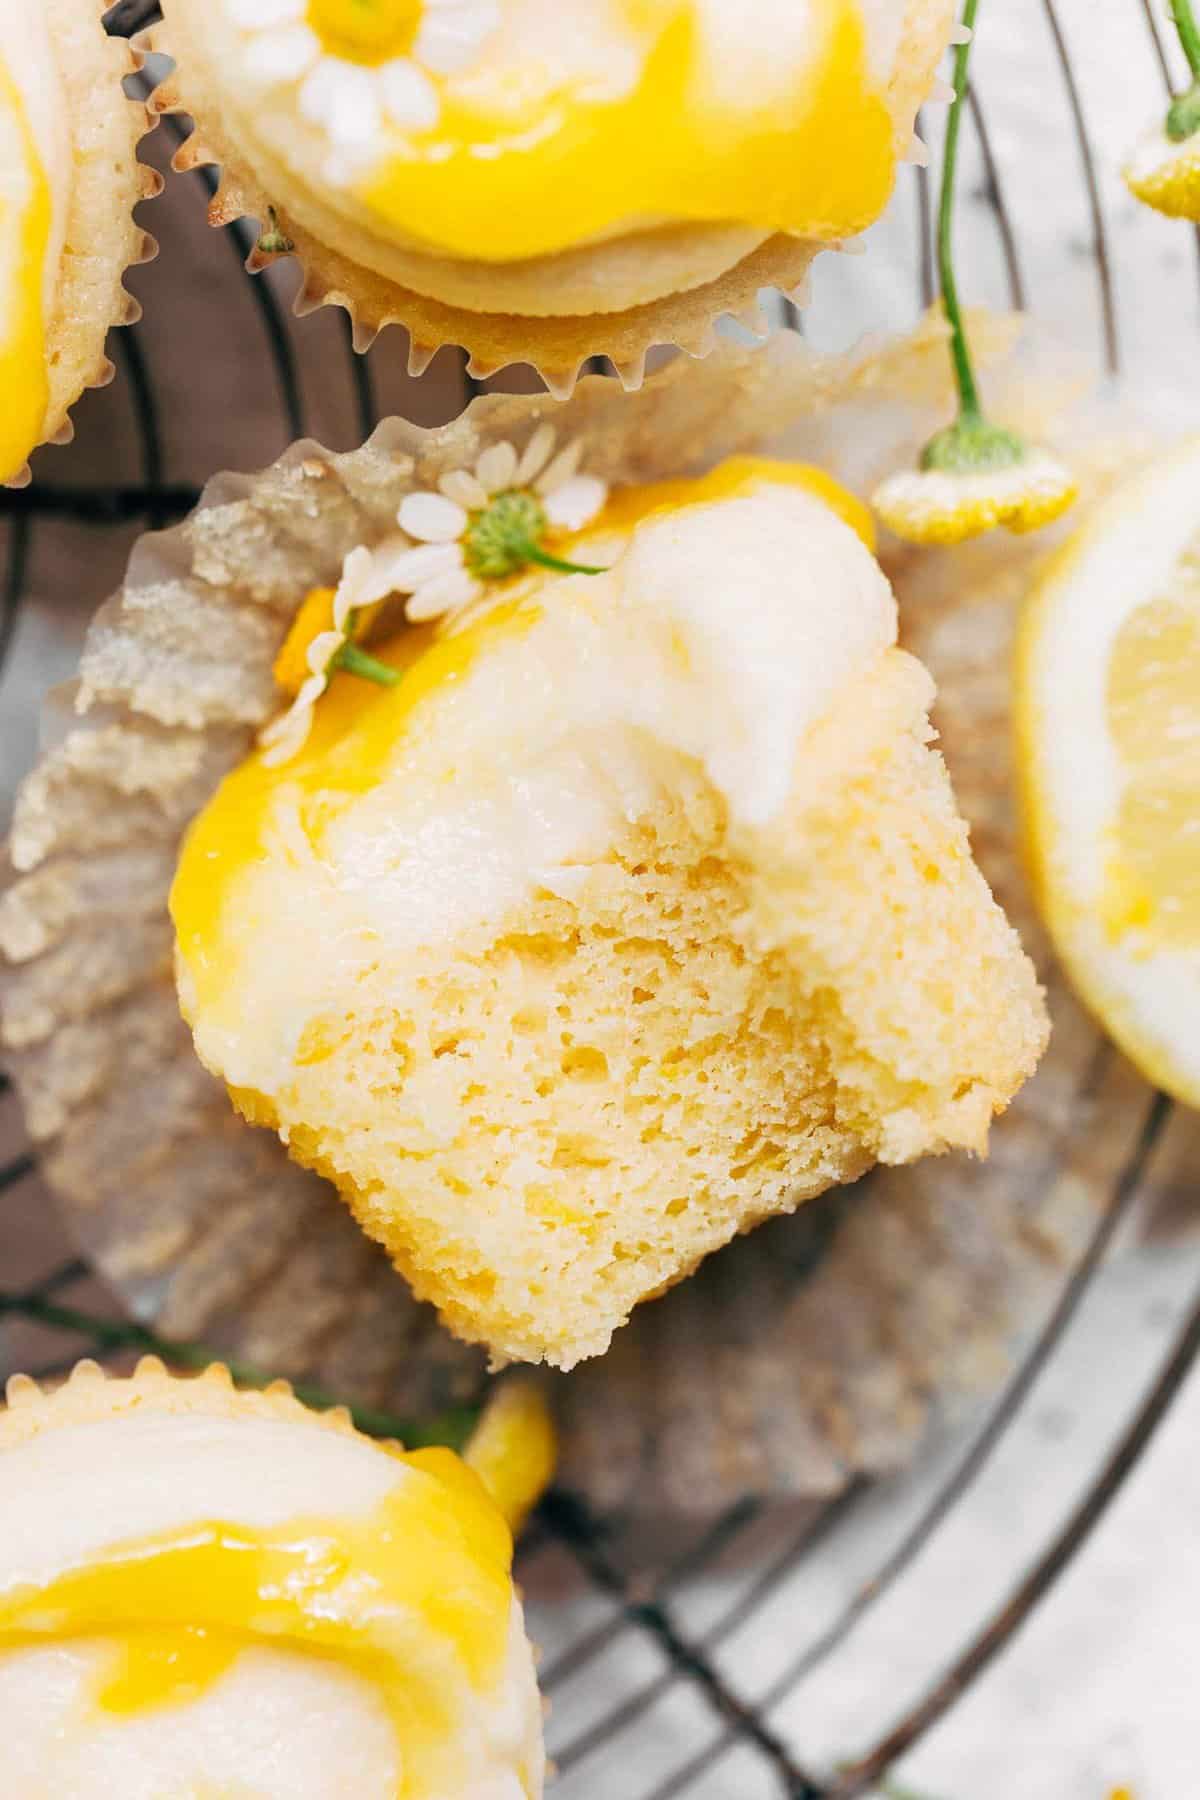 a bite taken from a lemon cupcake